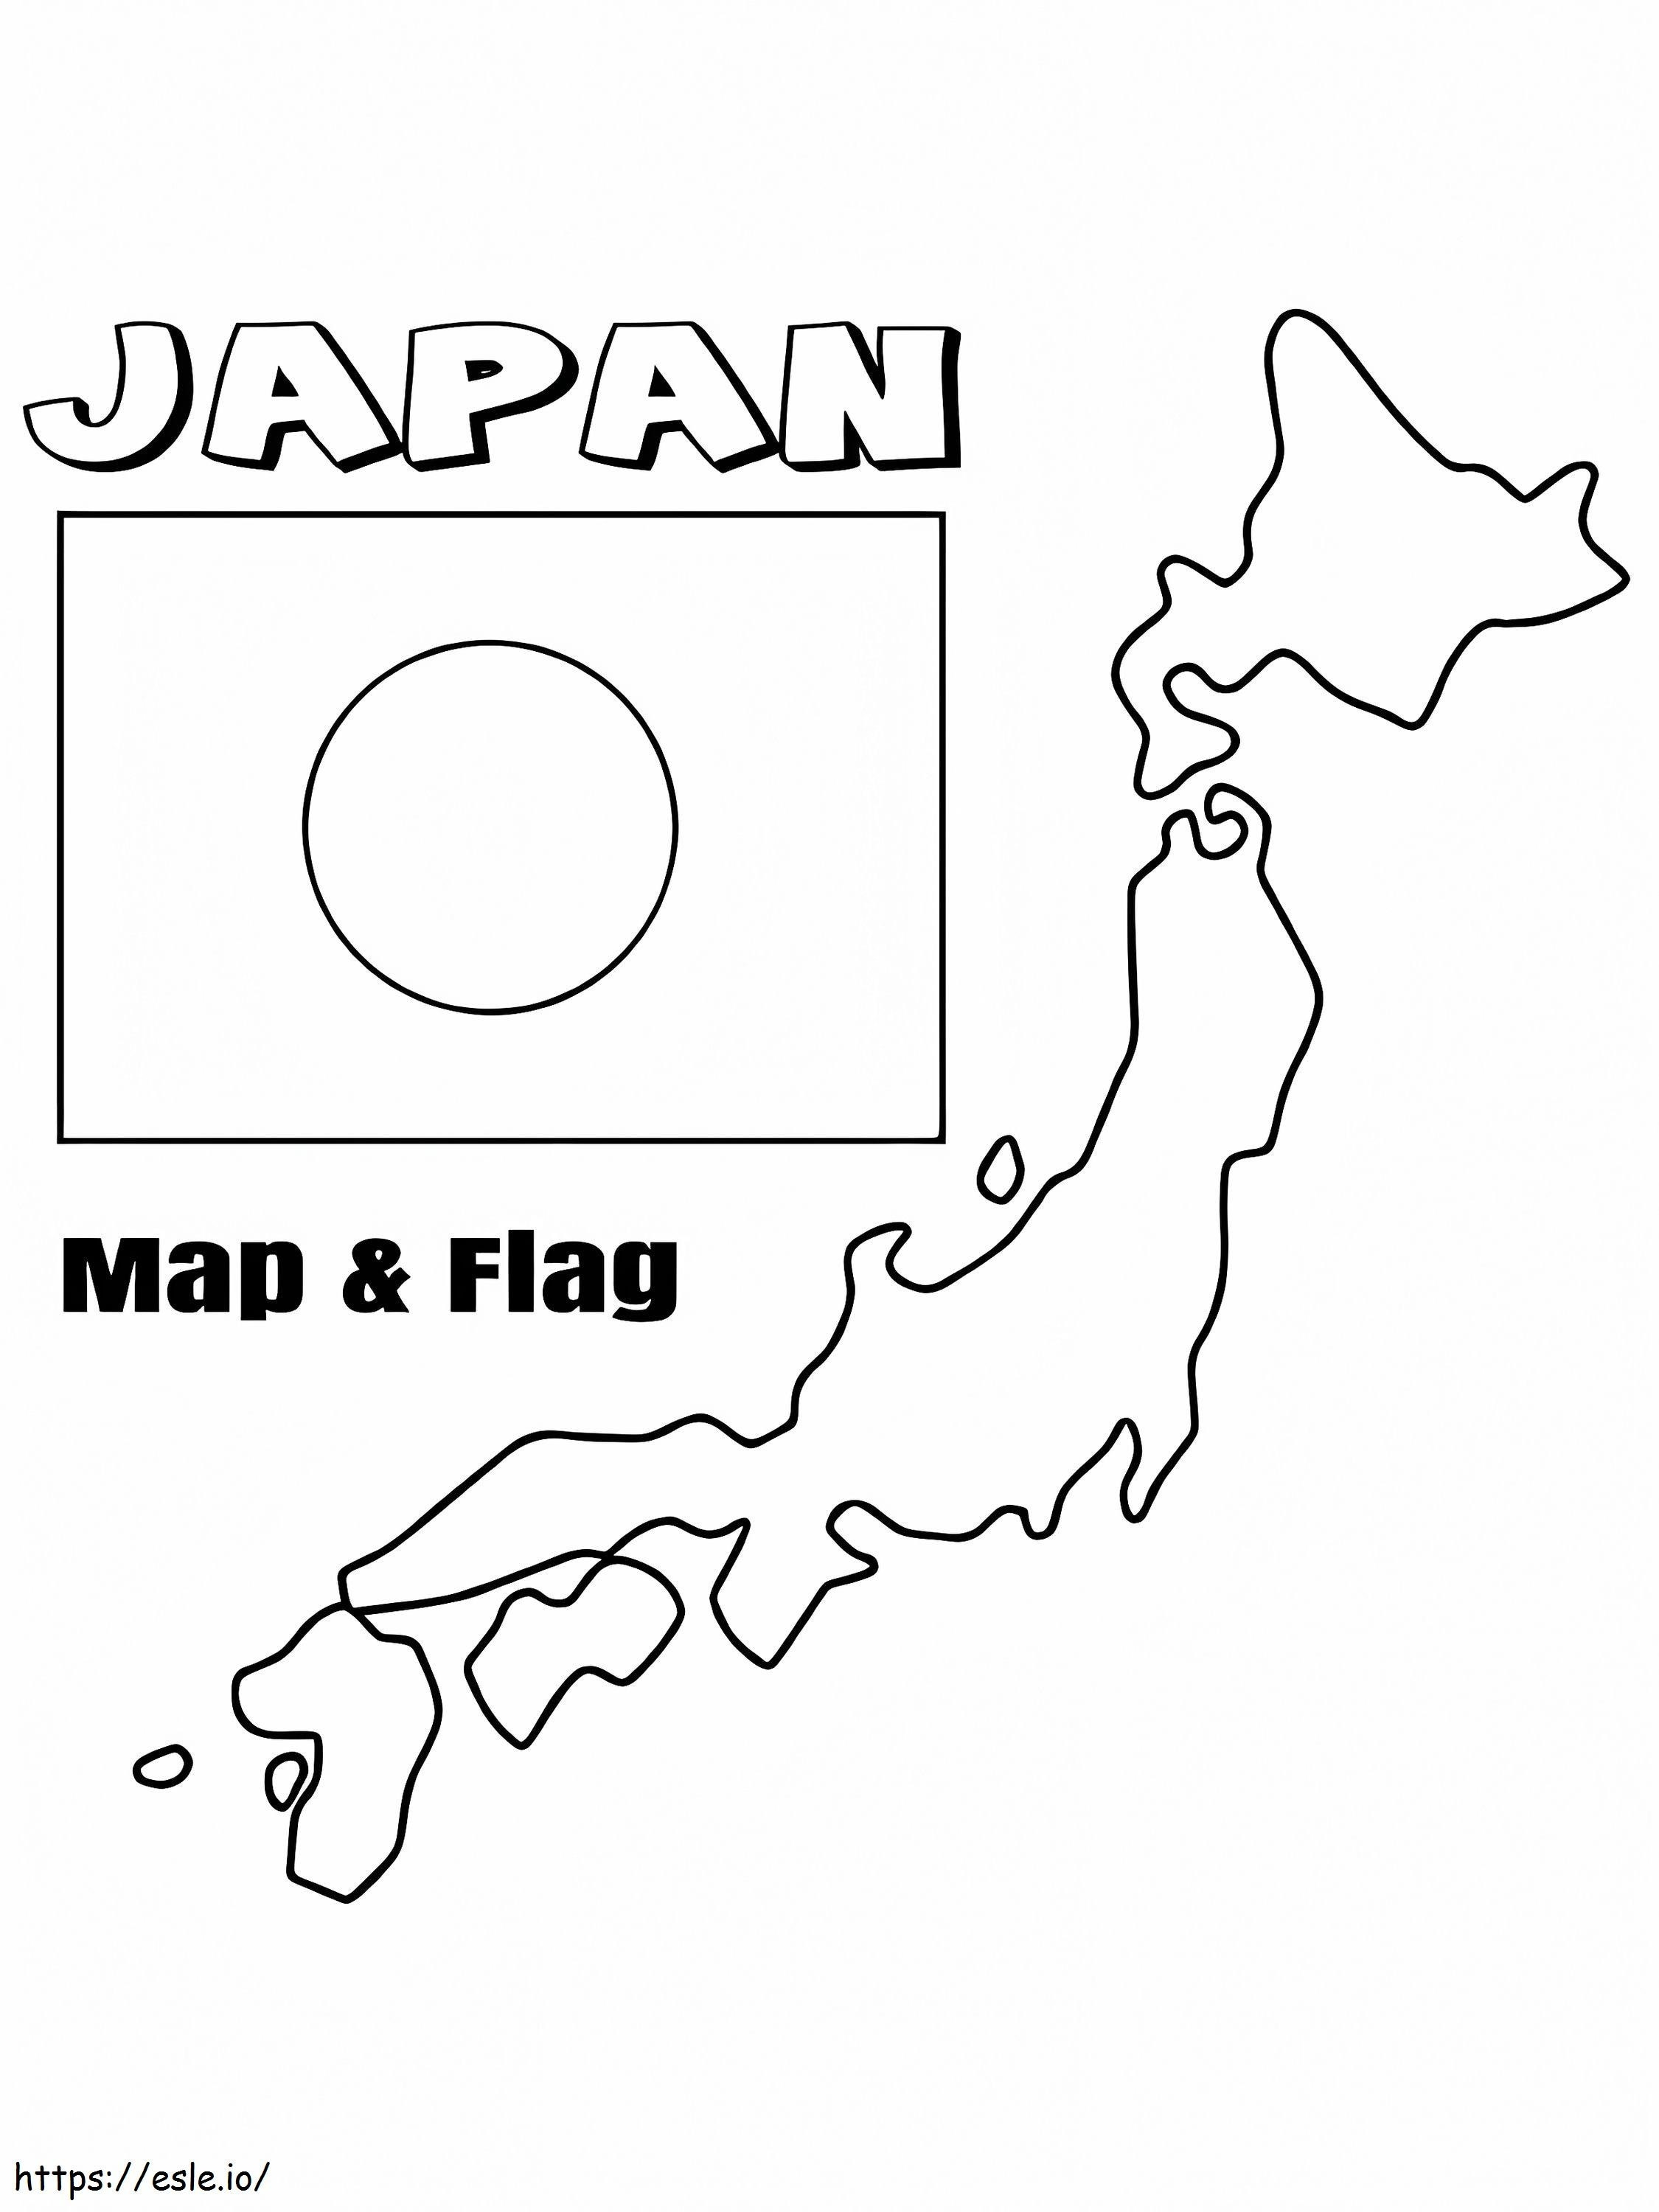 Vlag en kaart van Japan kleurplaat kleurplaat